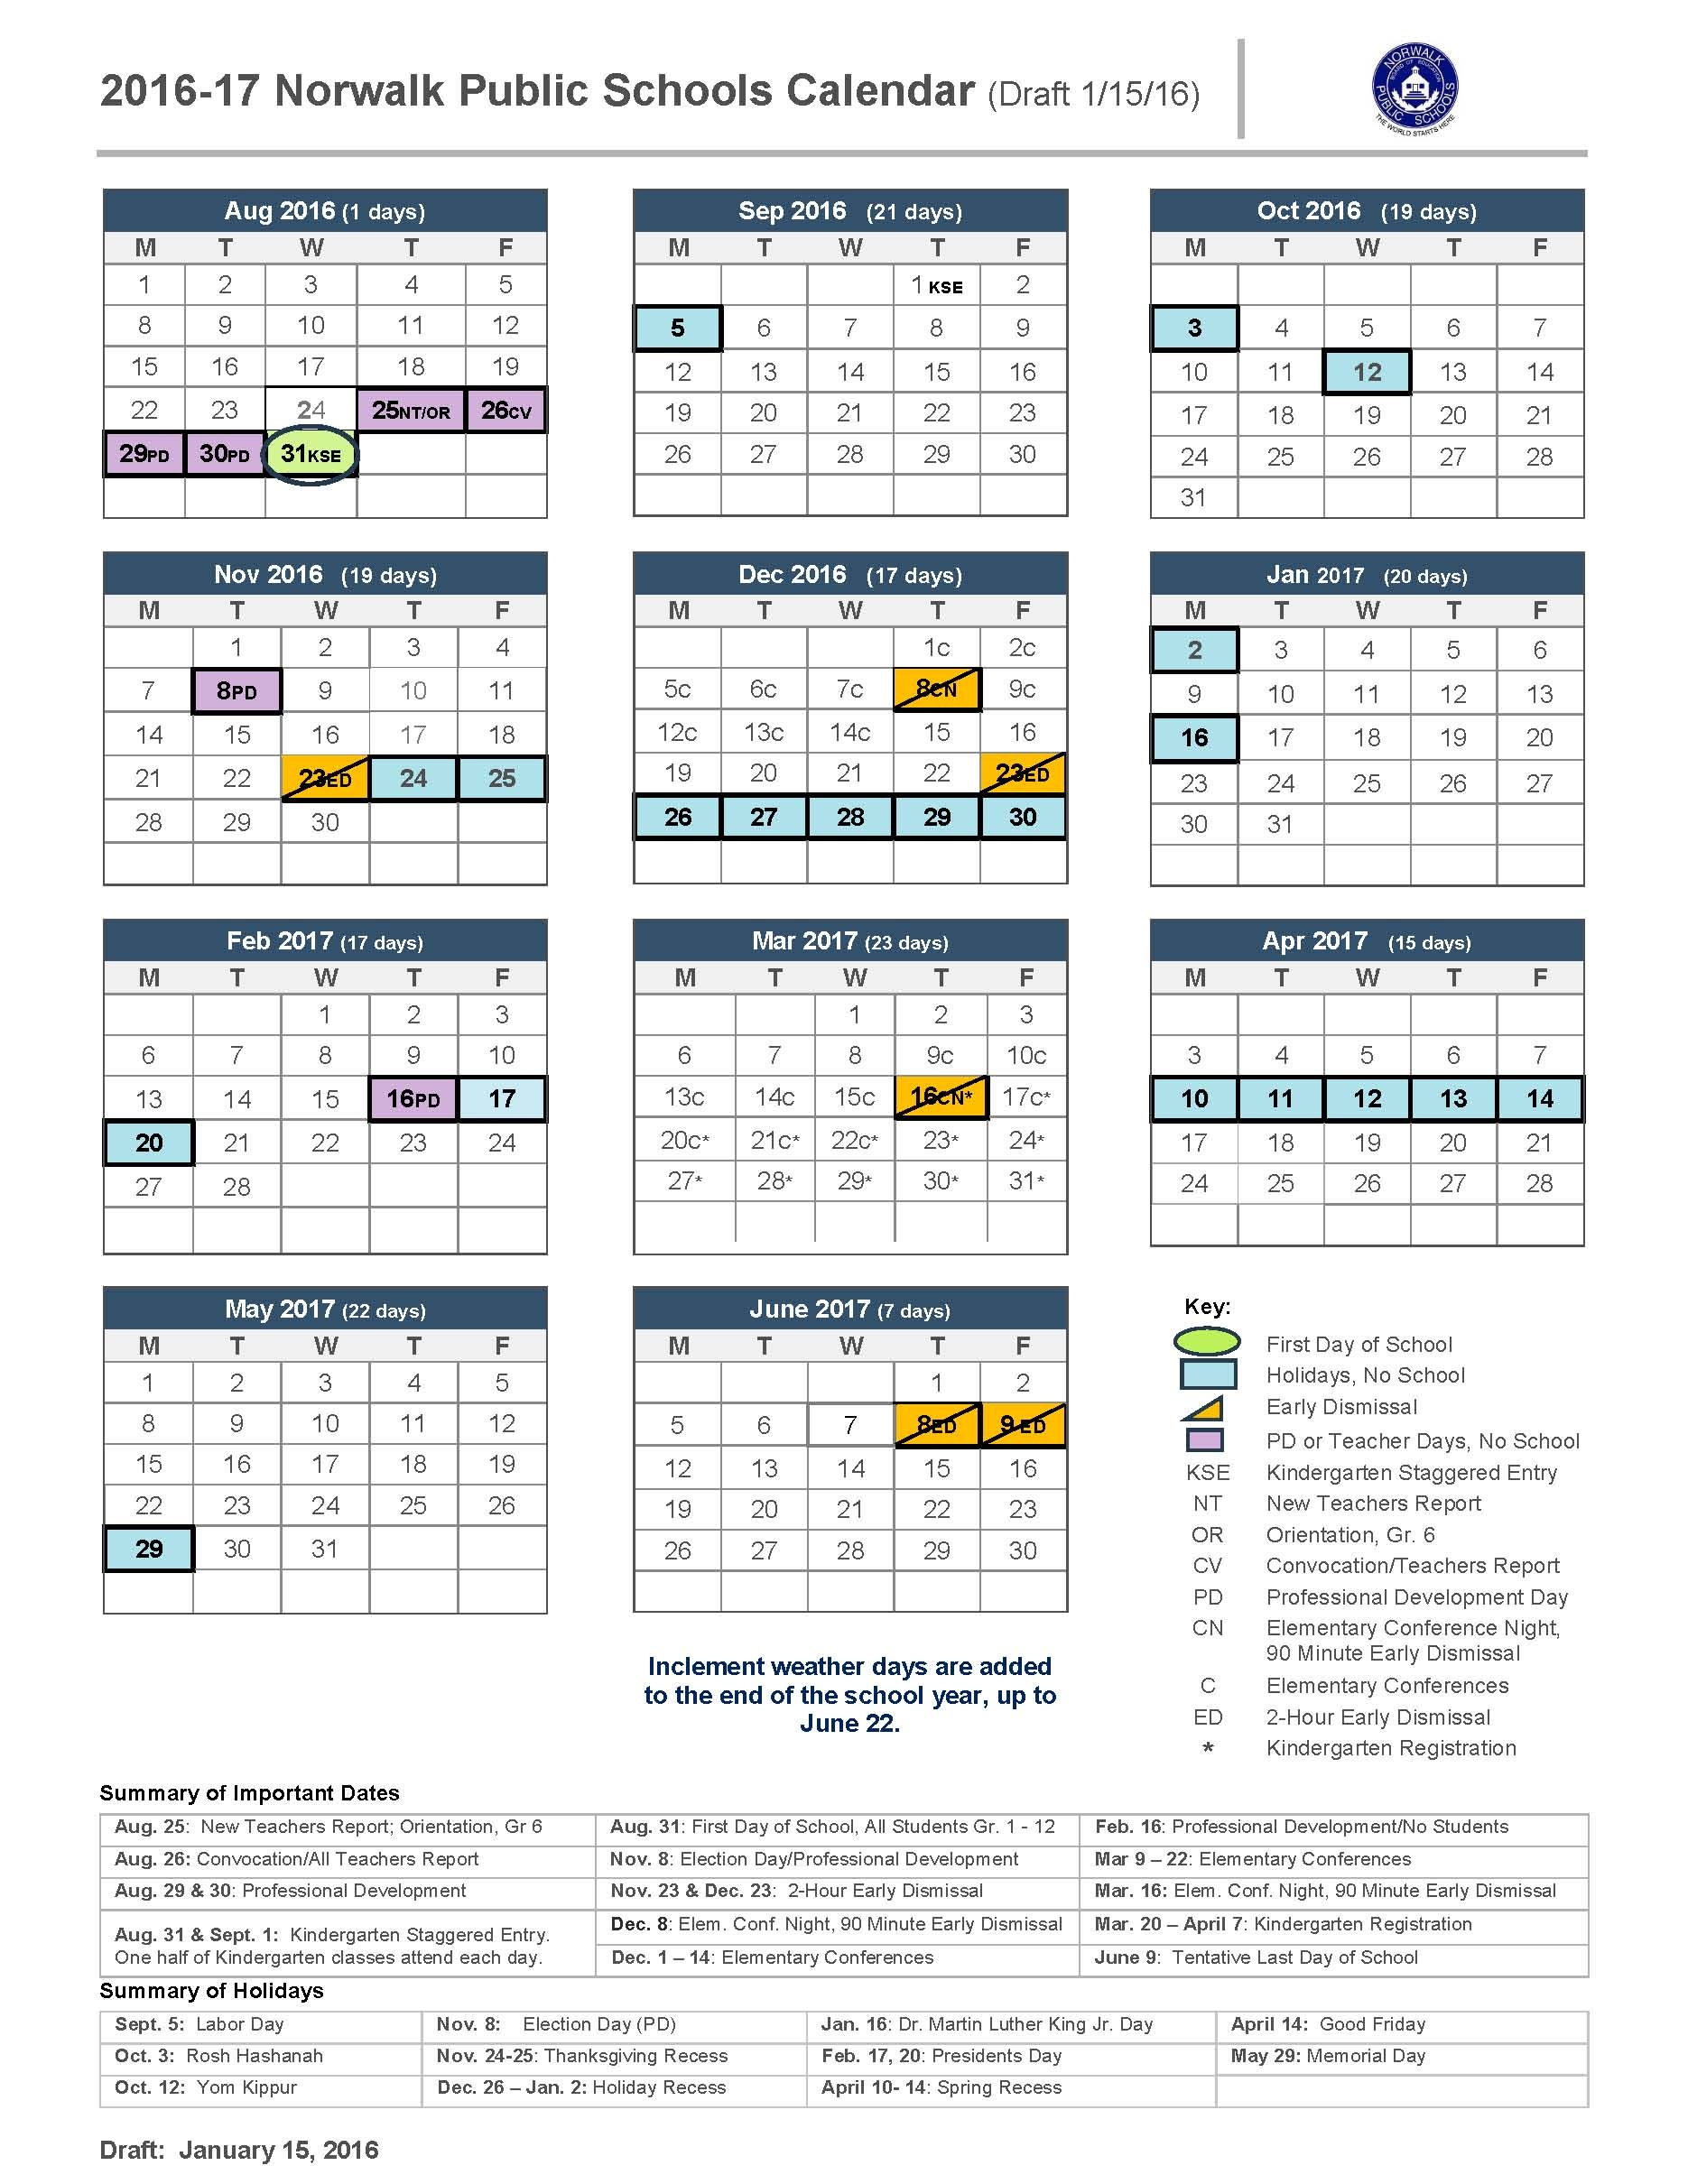 pasco-county-school-calendar-qualads